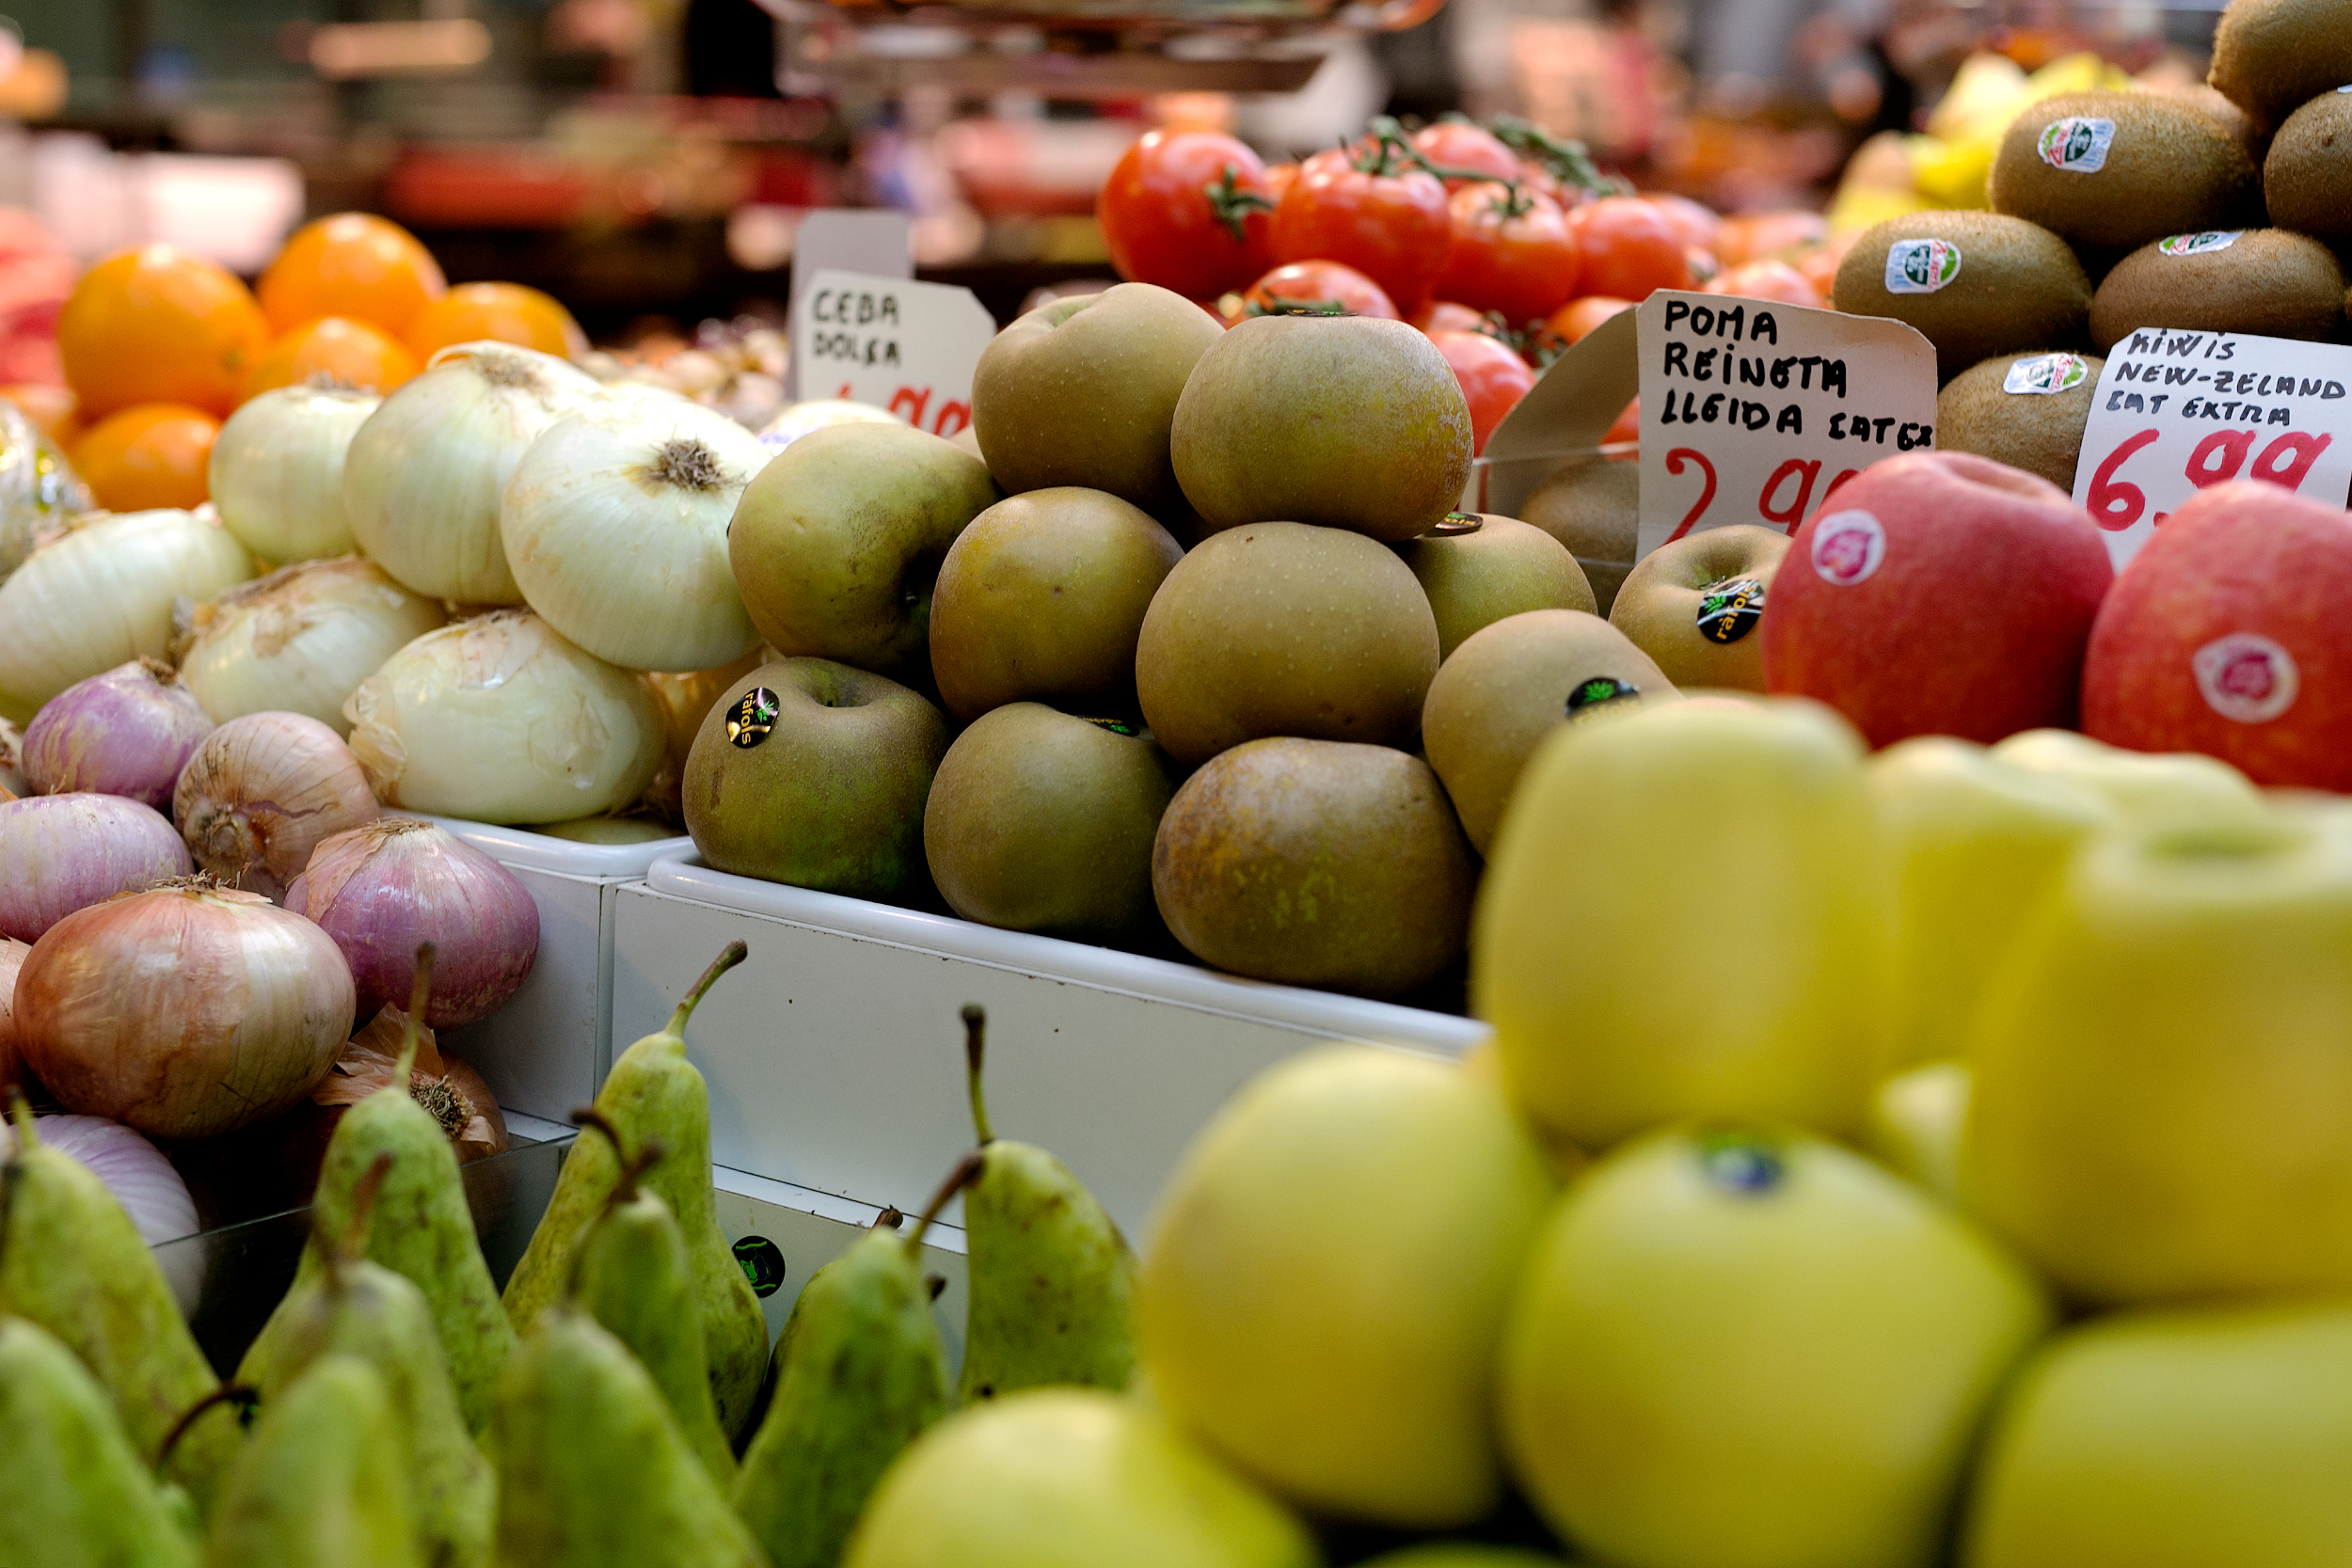 La fruita i les verdures són essencials en la dieta mediterrània. PERE TORDERA